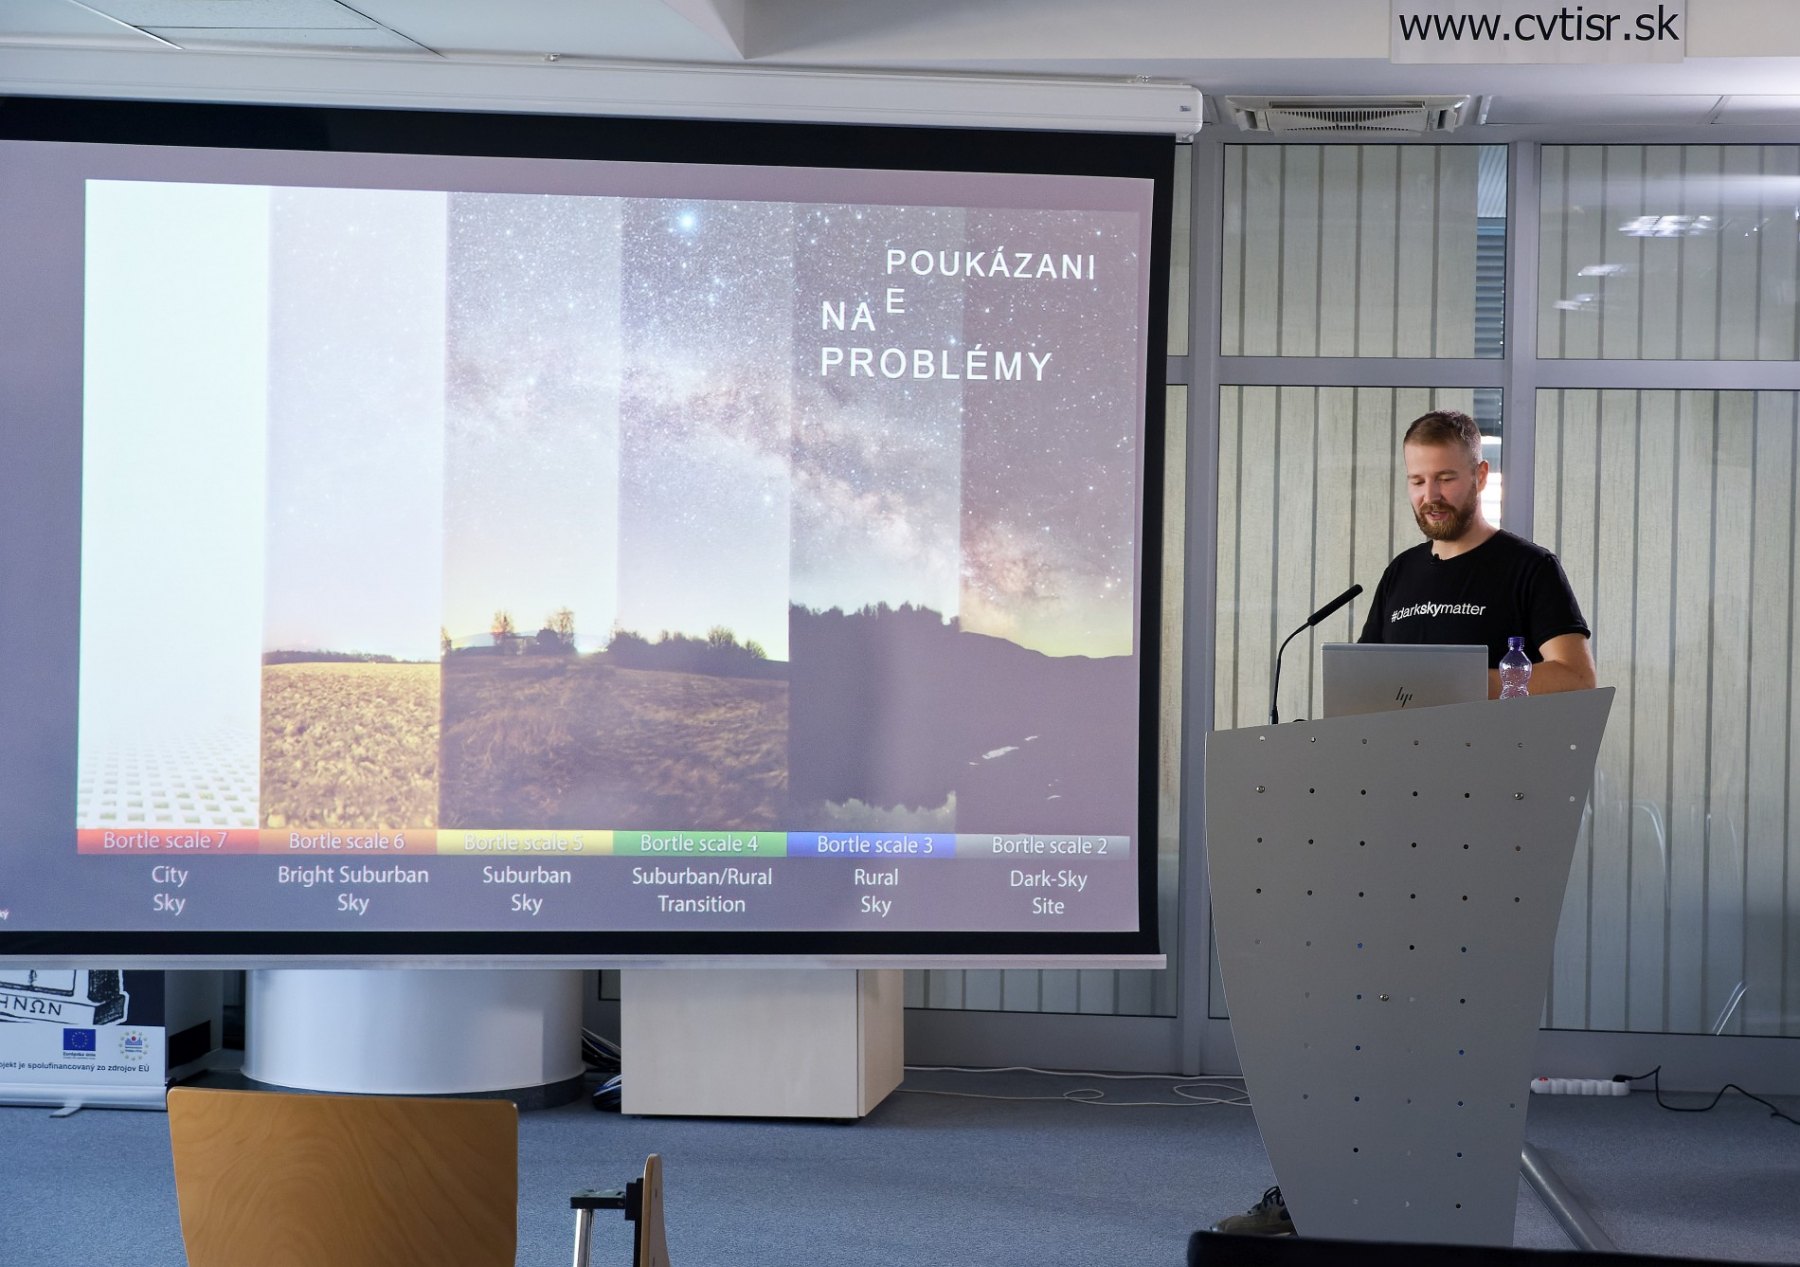 Tomáš Slovinský – Dokážeme prostredníctvom fotografie popularizovať vedu a techniku?